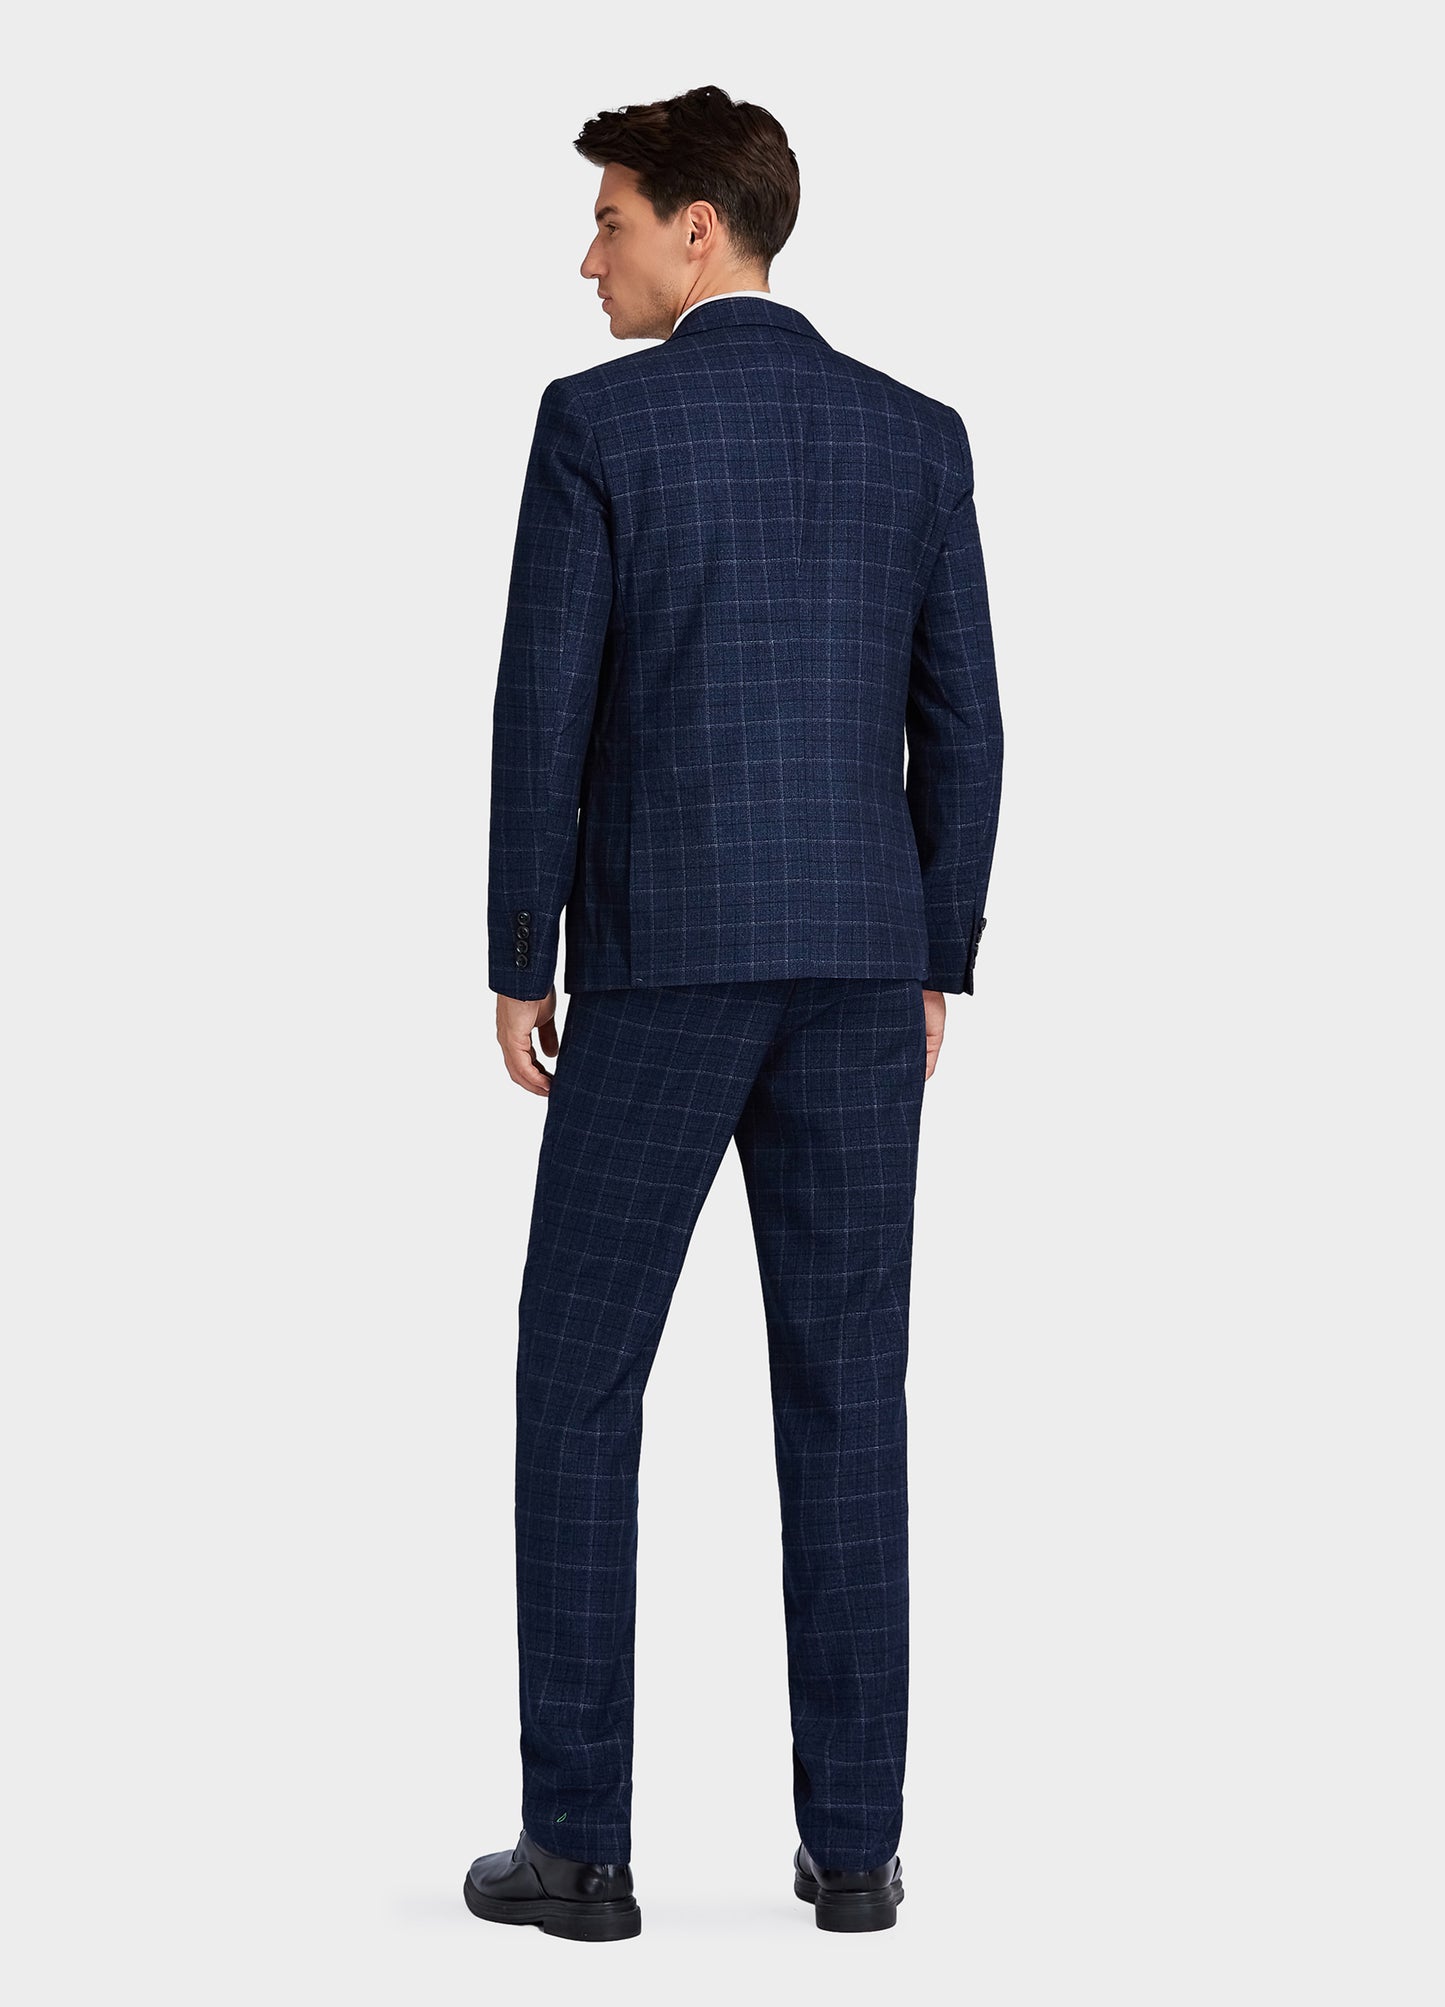 1PA1 Men's 3 Pieces Slim Fit Plaid Vested Suit, Wedding Tuxedo - One Button Jacket, Vest & Pants